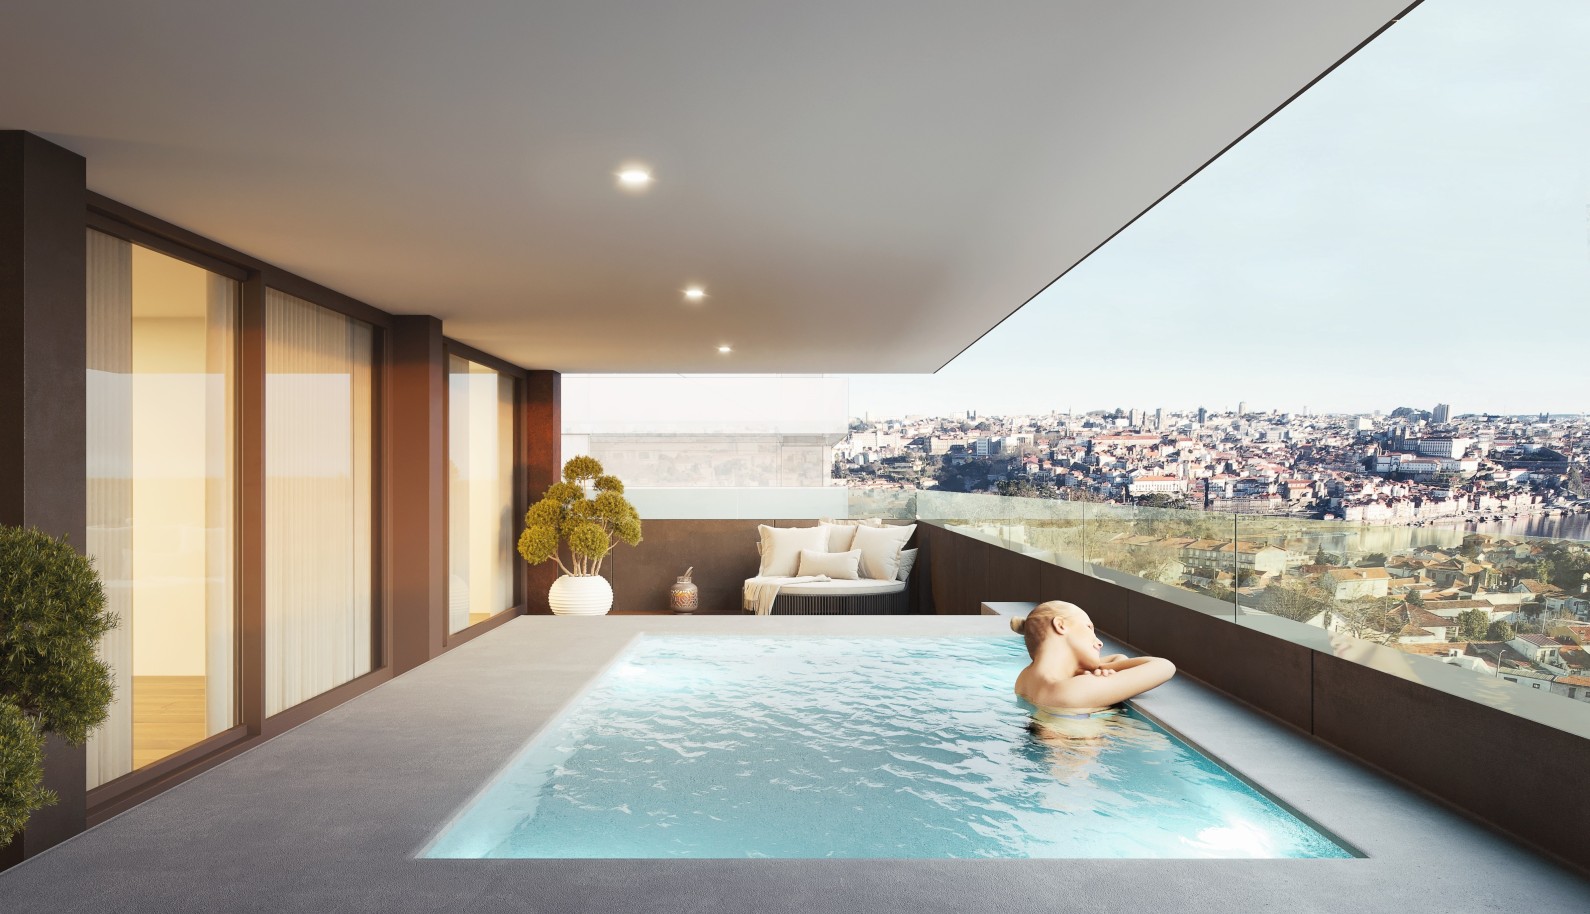 Apartamento novo com piscina, para venda, em V. N. Gaia, Porto, Portugal_240323